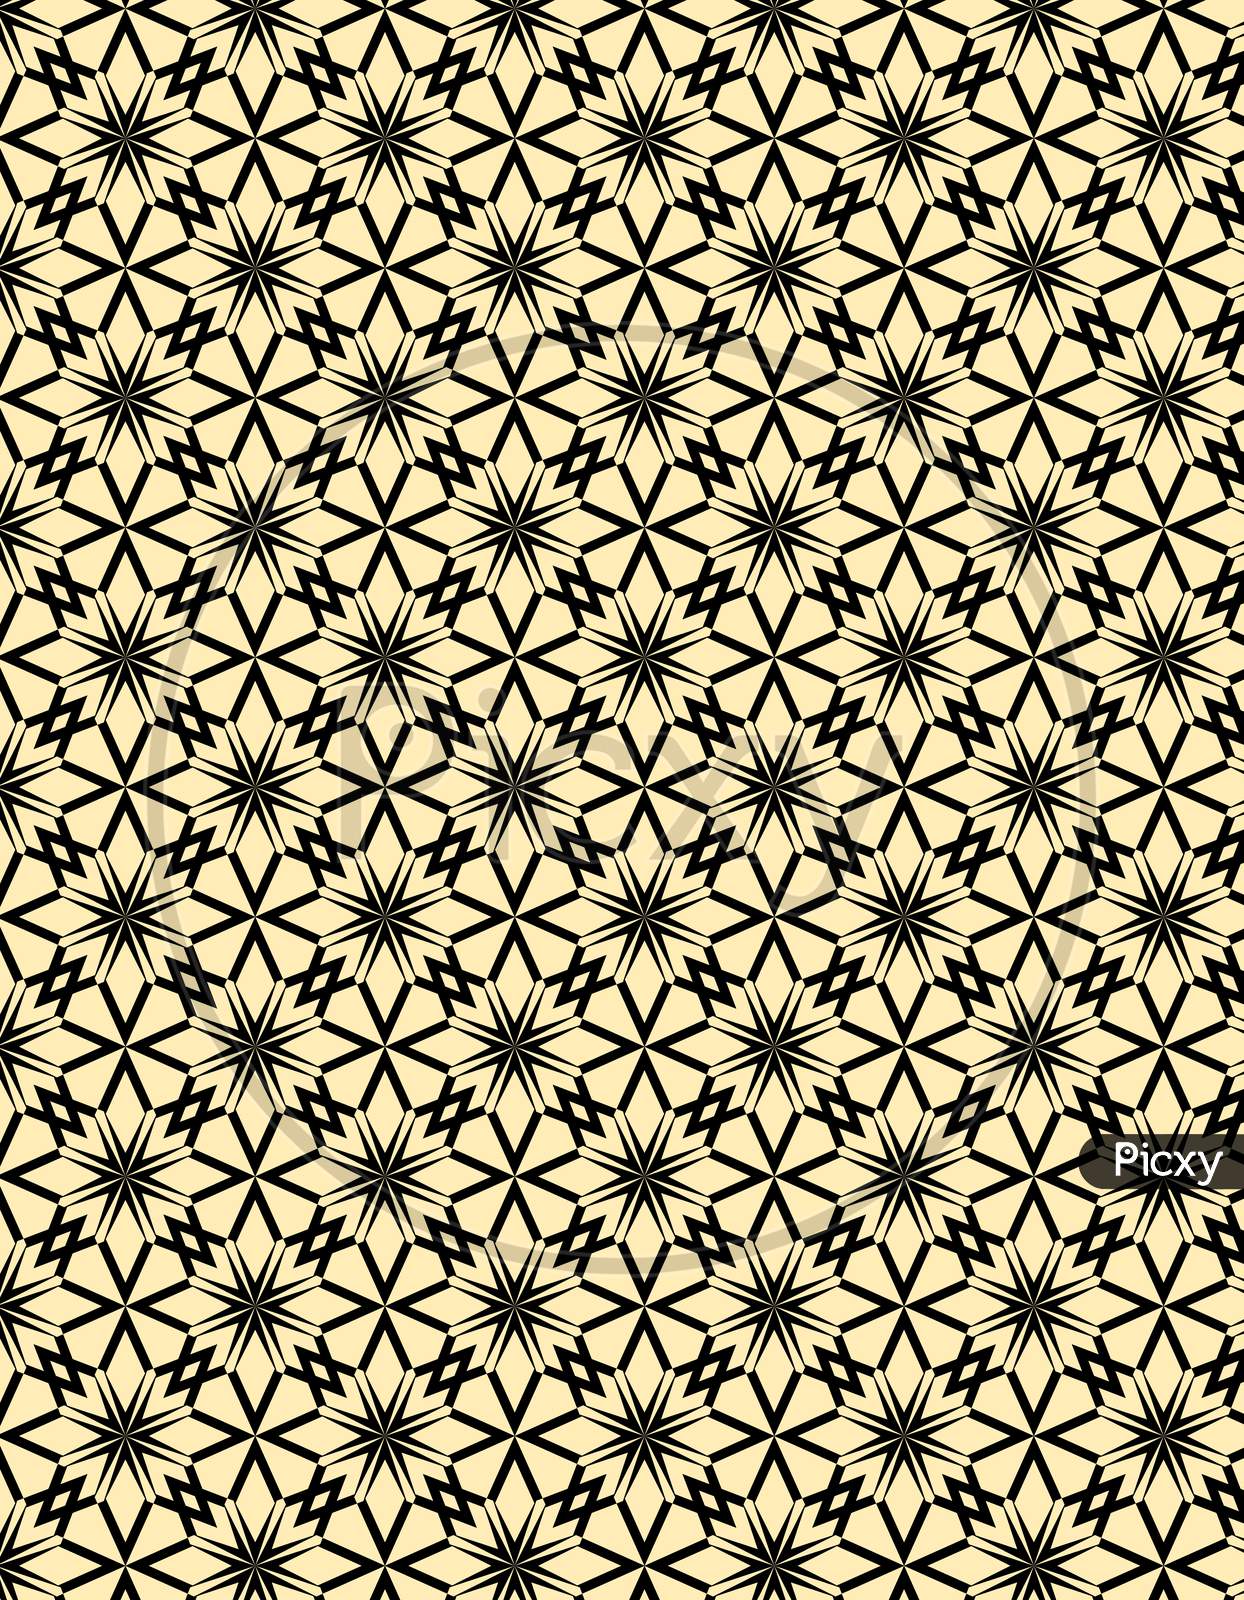 Textile design patterns